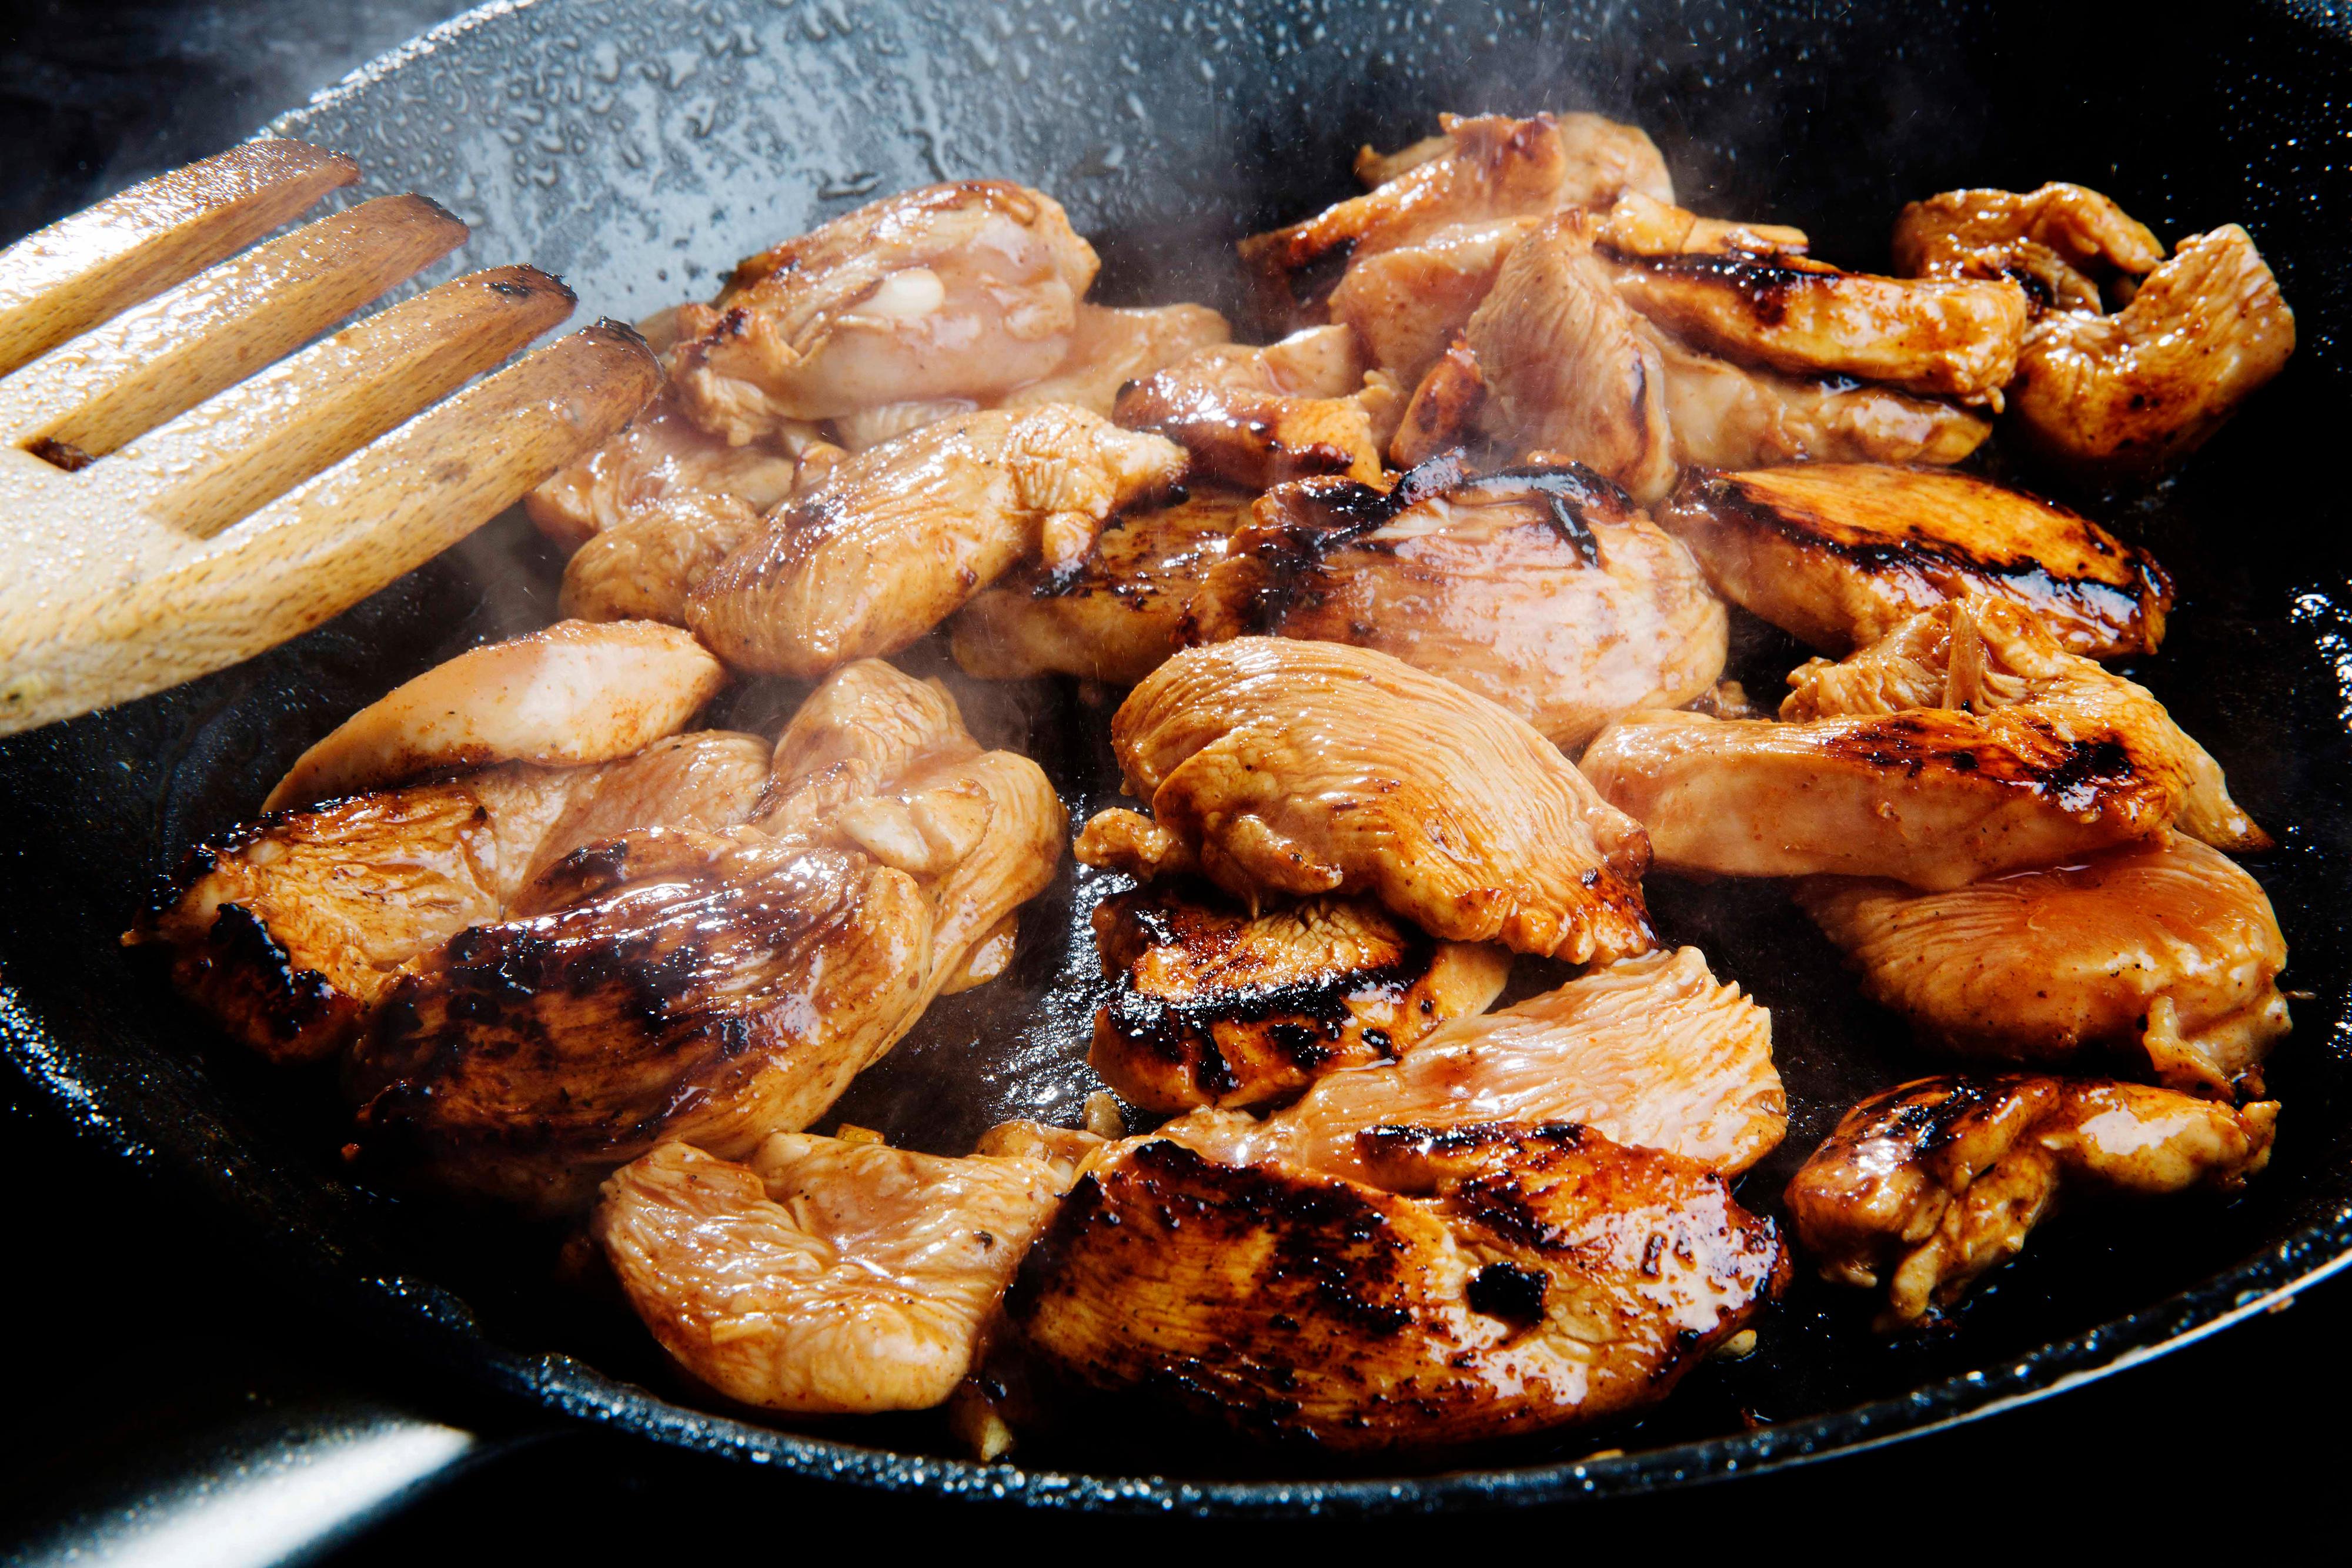 Fjern kyllingstykkene fra marinaden. Stek kyllingen raskt på sterk varme. 